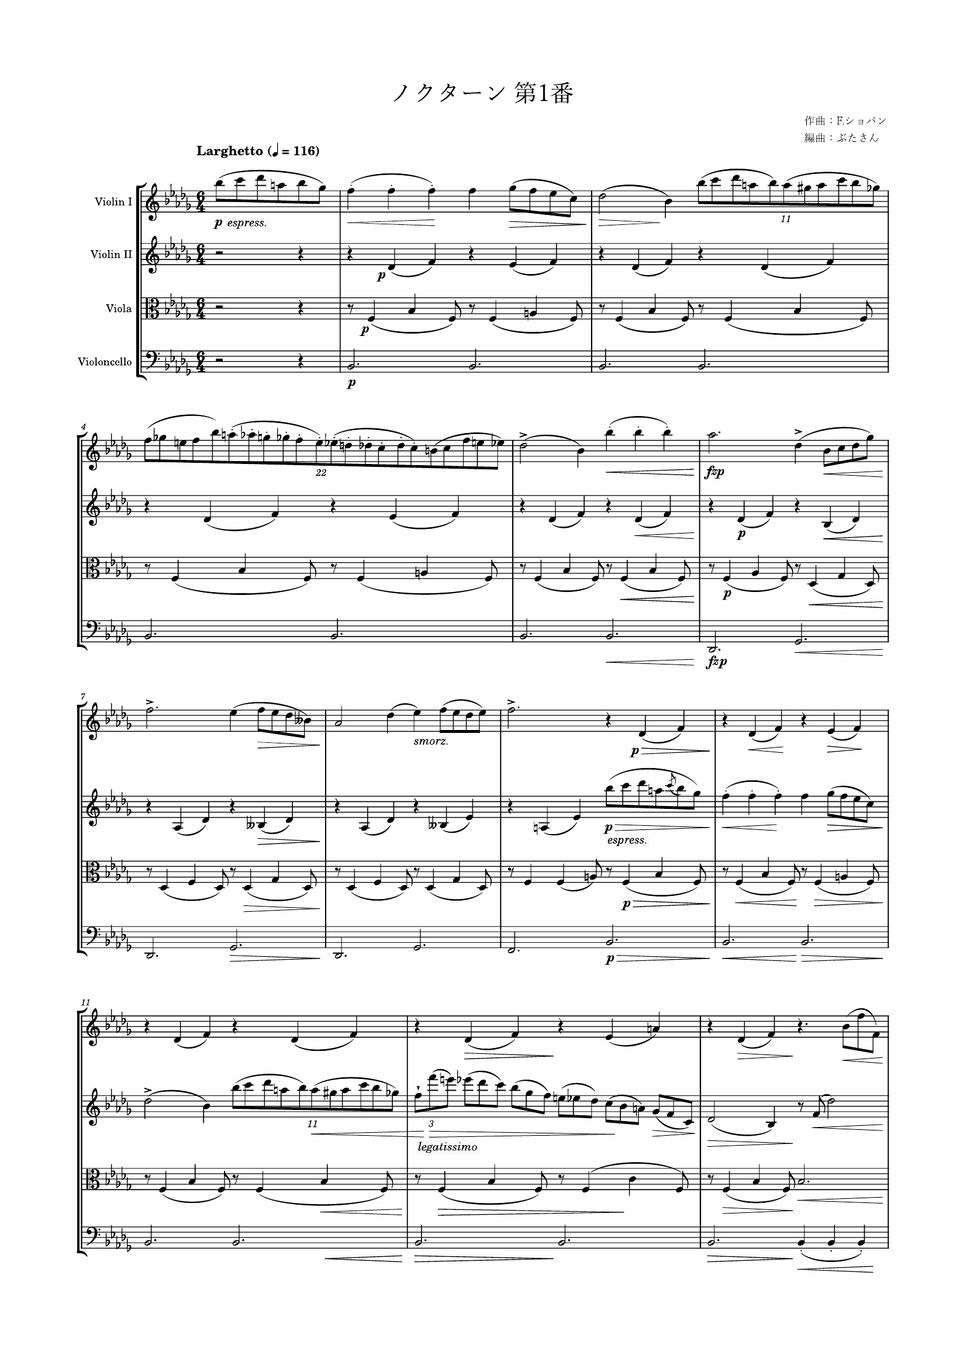 フレデリック・ショパン - ノクターン第1番 (弦楽四重奏) by ぶたさん